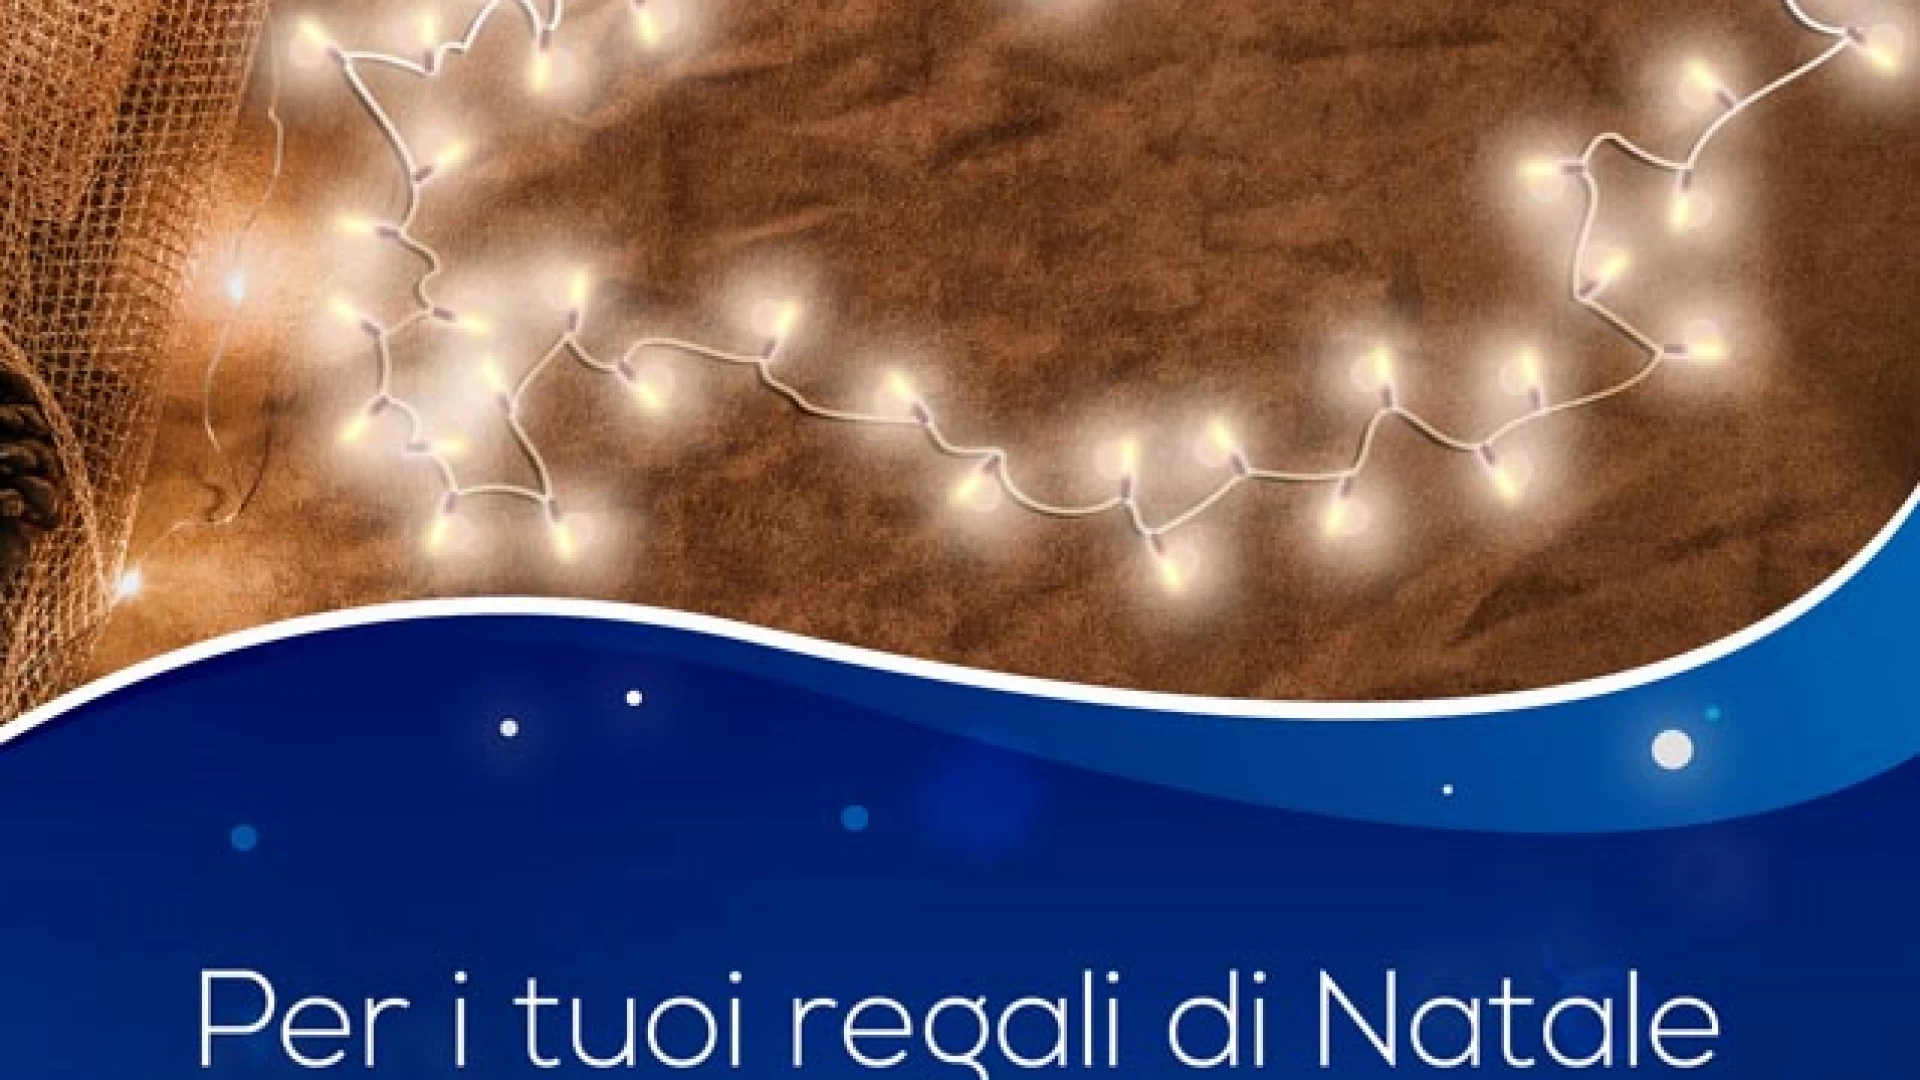 La Federazione Italiana Pubblici esercizi propone orari alternativi per gli acquisti natalizi.